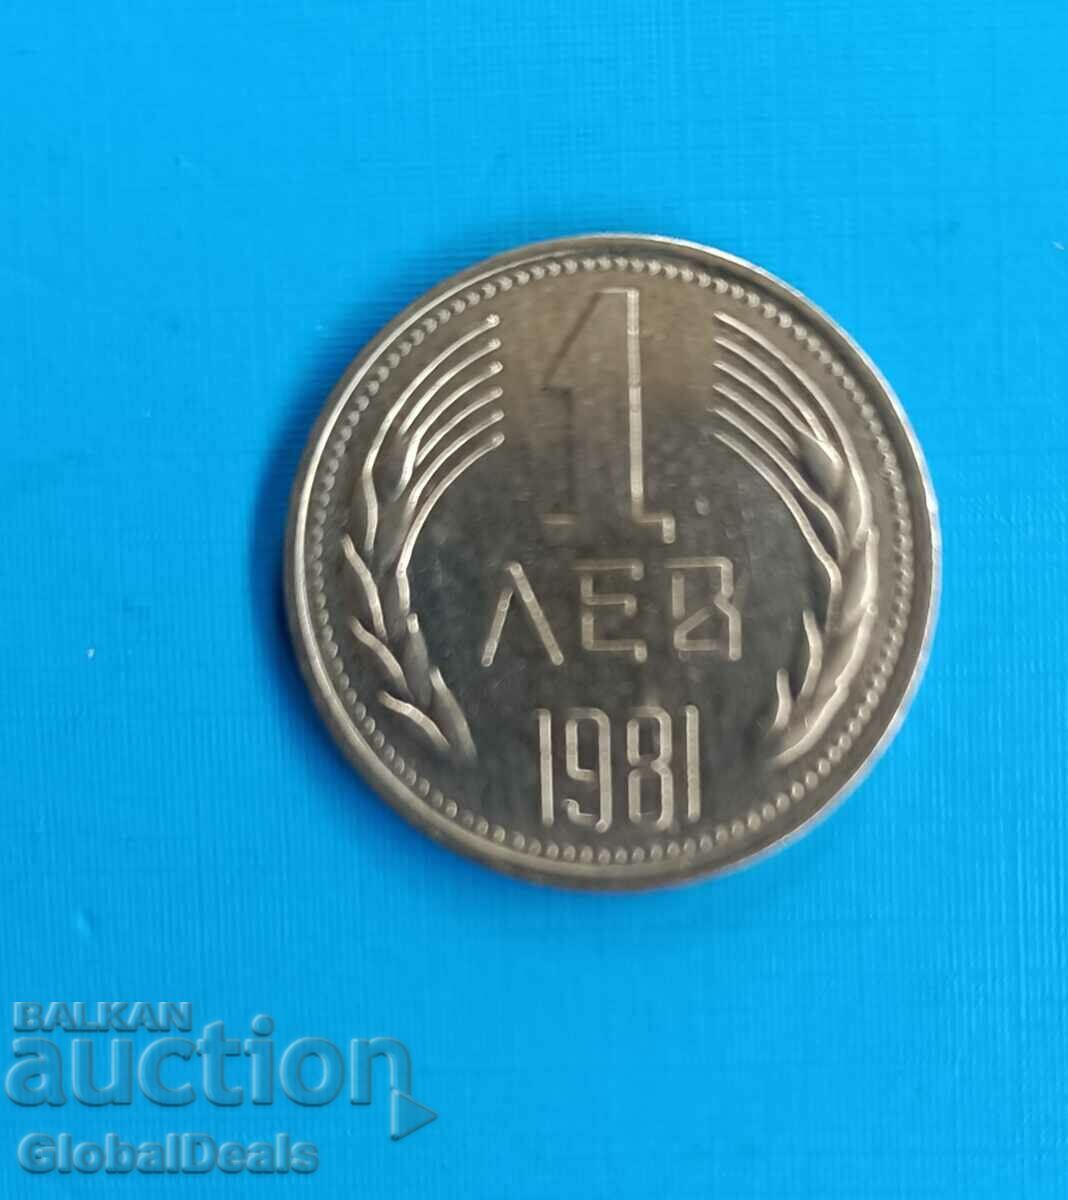 De la 1 cent la 1 lev - 1981